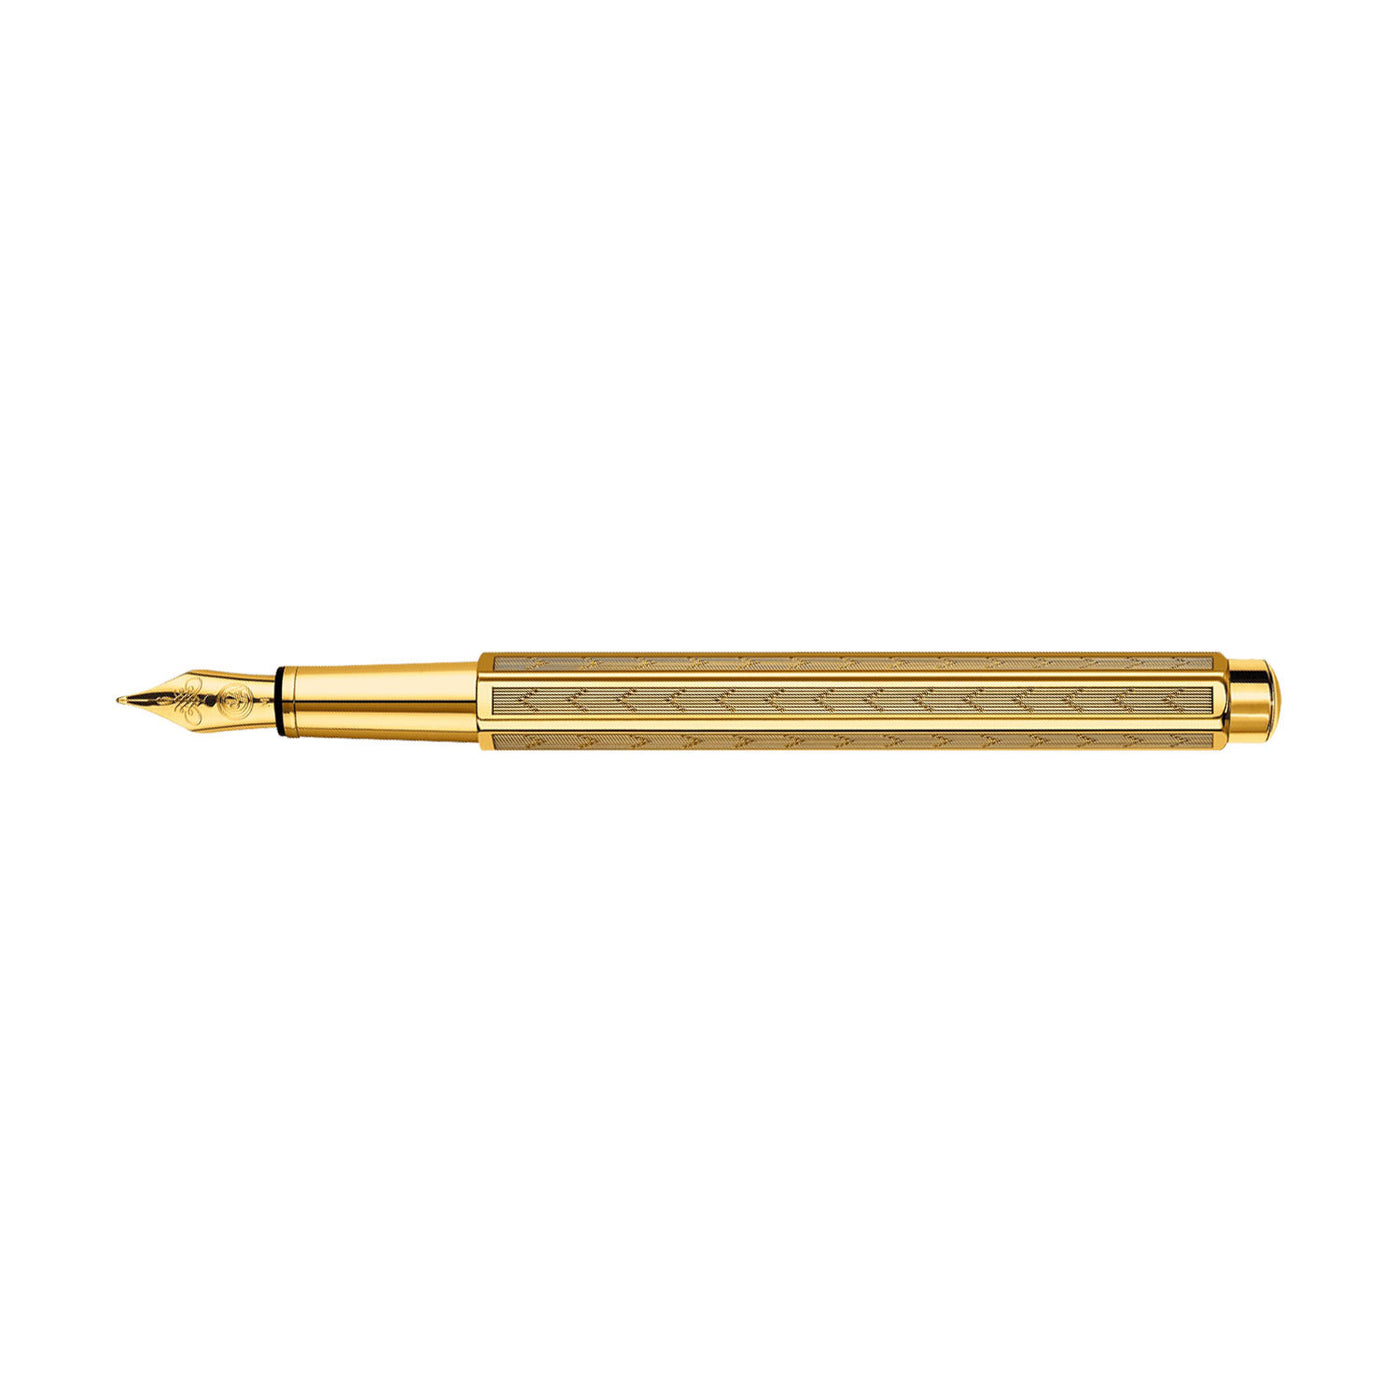 Caran D' Ache Ecridor Fountain Pen, Cheveron Gold - Steel Nib 2